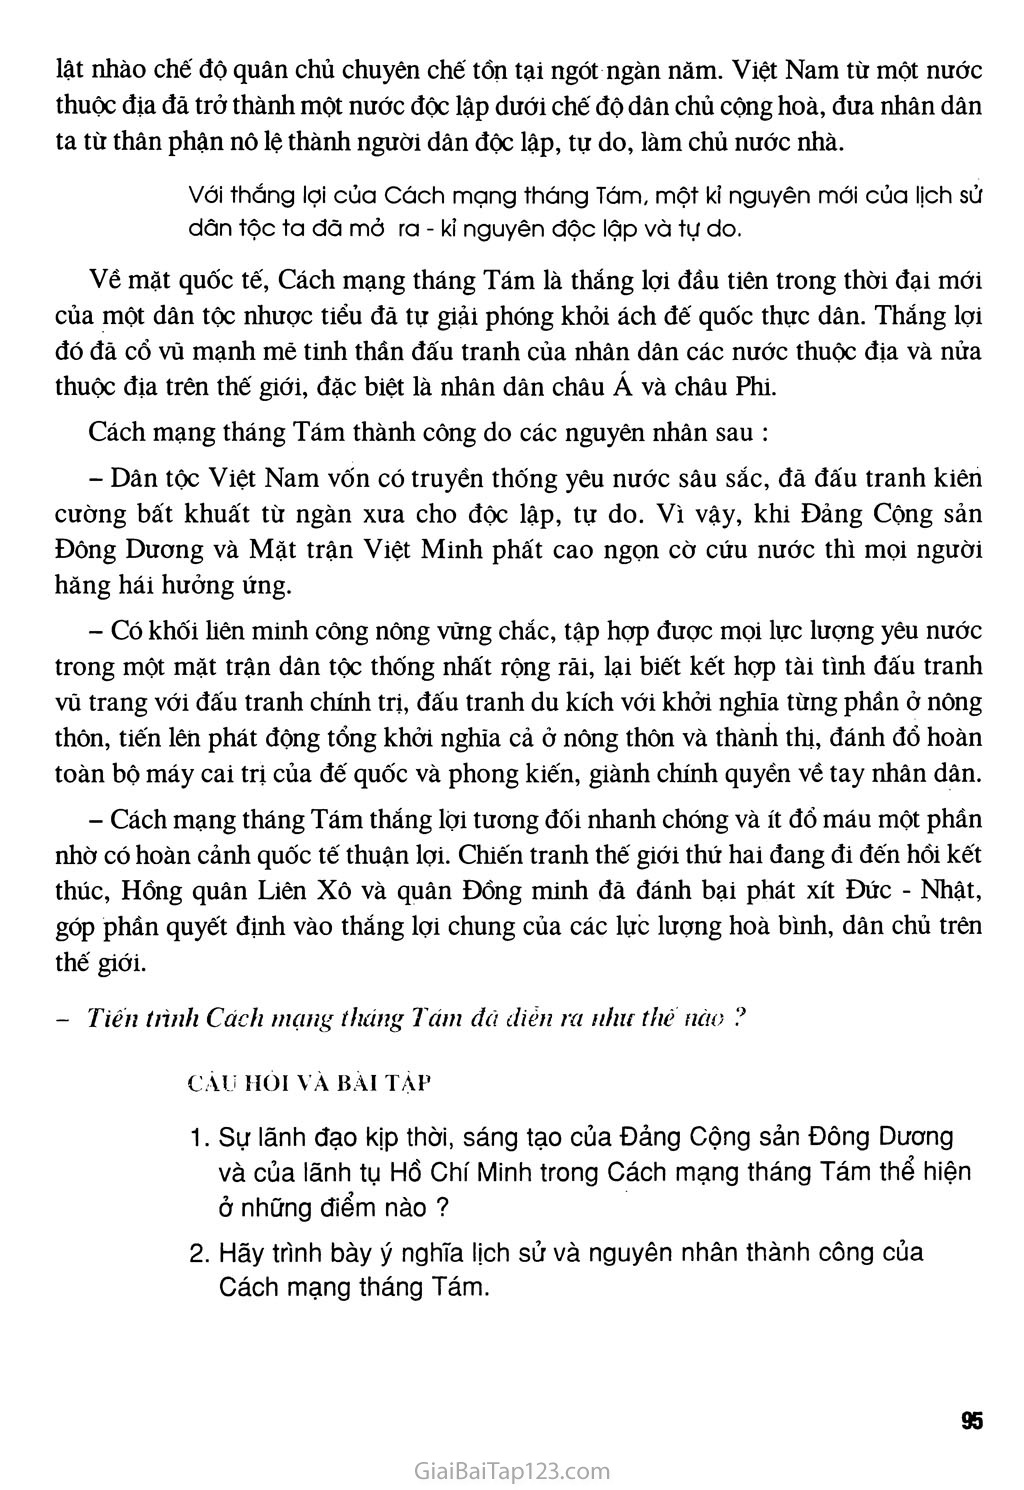 Bài 23 - Tổng khởi nghĩa tháng Tám năm 1945 và sự thành lập nước Việt Nam Dân chủ Cộng hòa trang 4